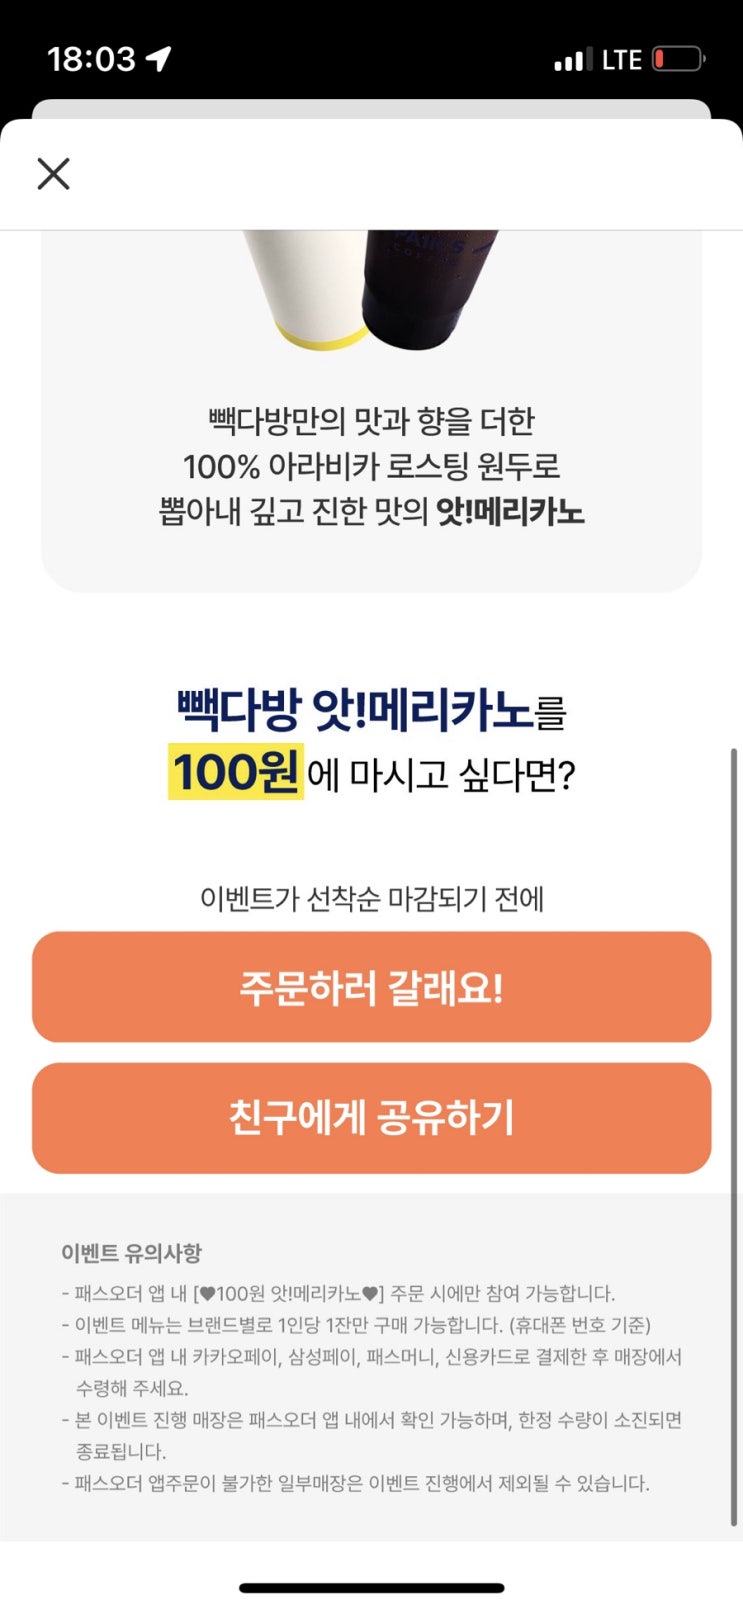 패스오더앱에서 빽다방 아메리카노 100원(~5.18)